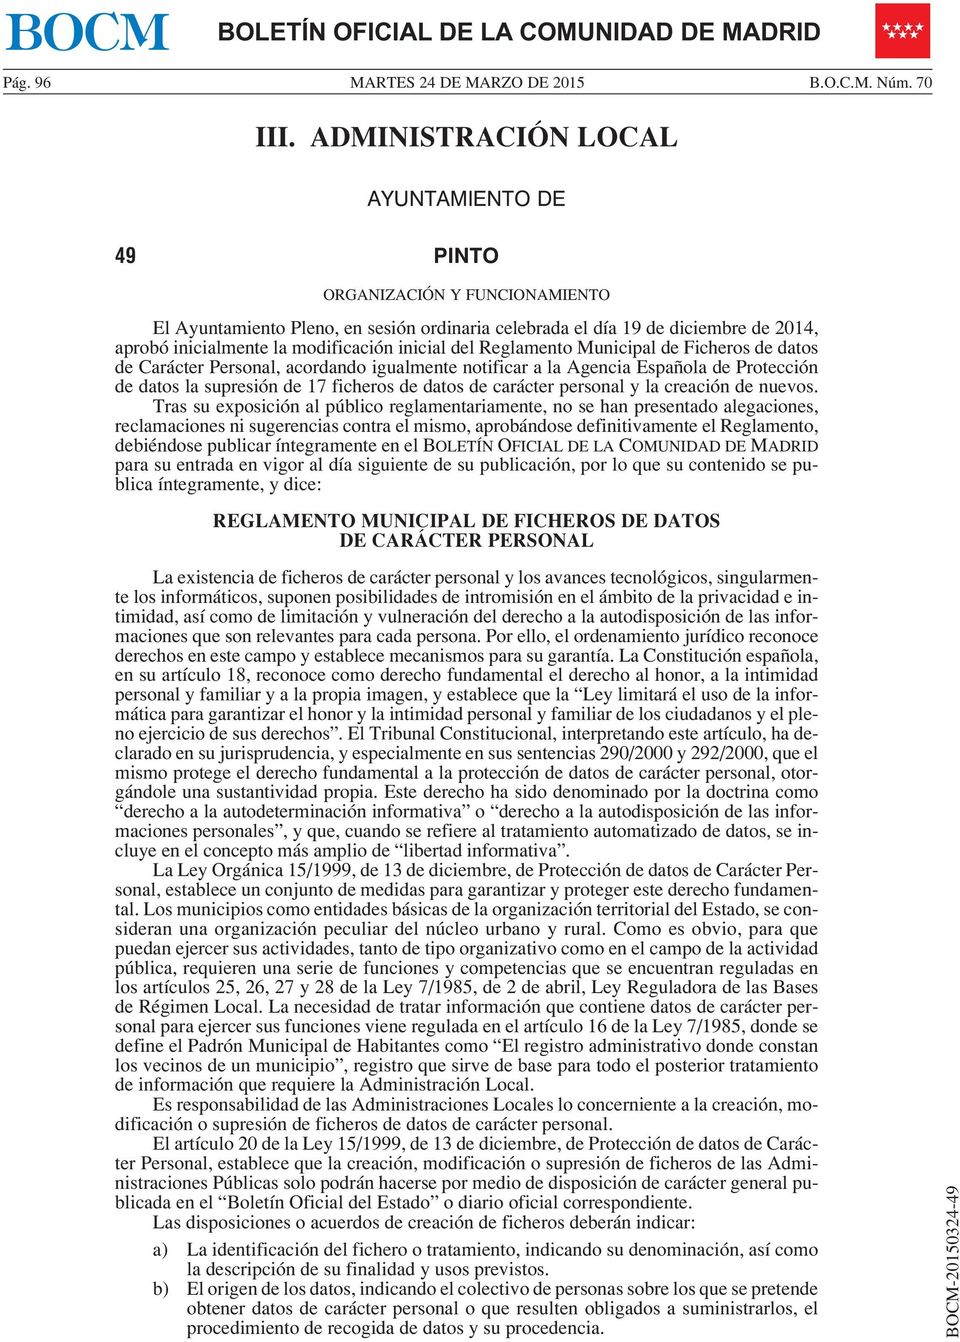 inicial del Reglamento Municipal de Ficheros de datos de Carácter Personal, acordando igualmente notificar a la Agencia Española de Protección de datos la supresión de 17 ficheros de datos de